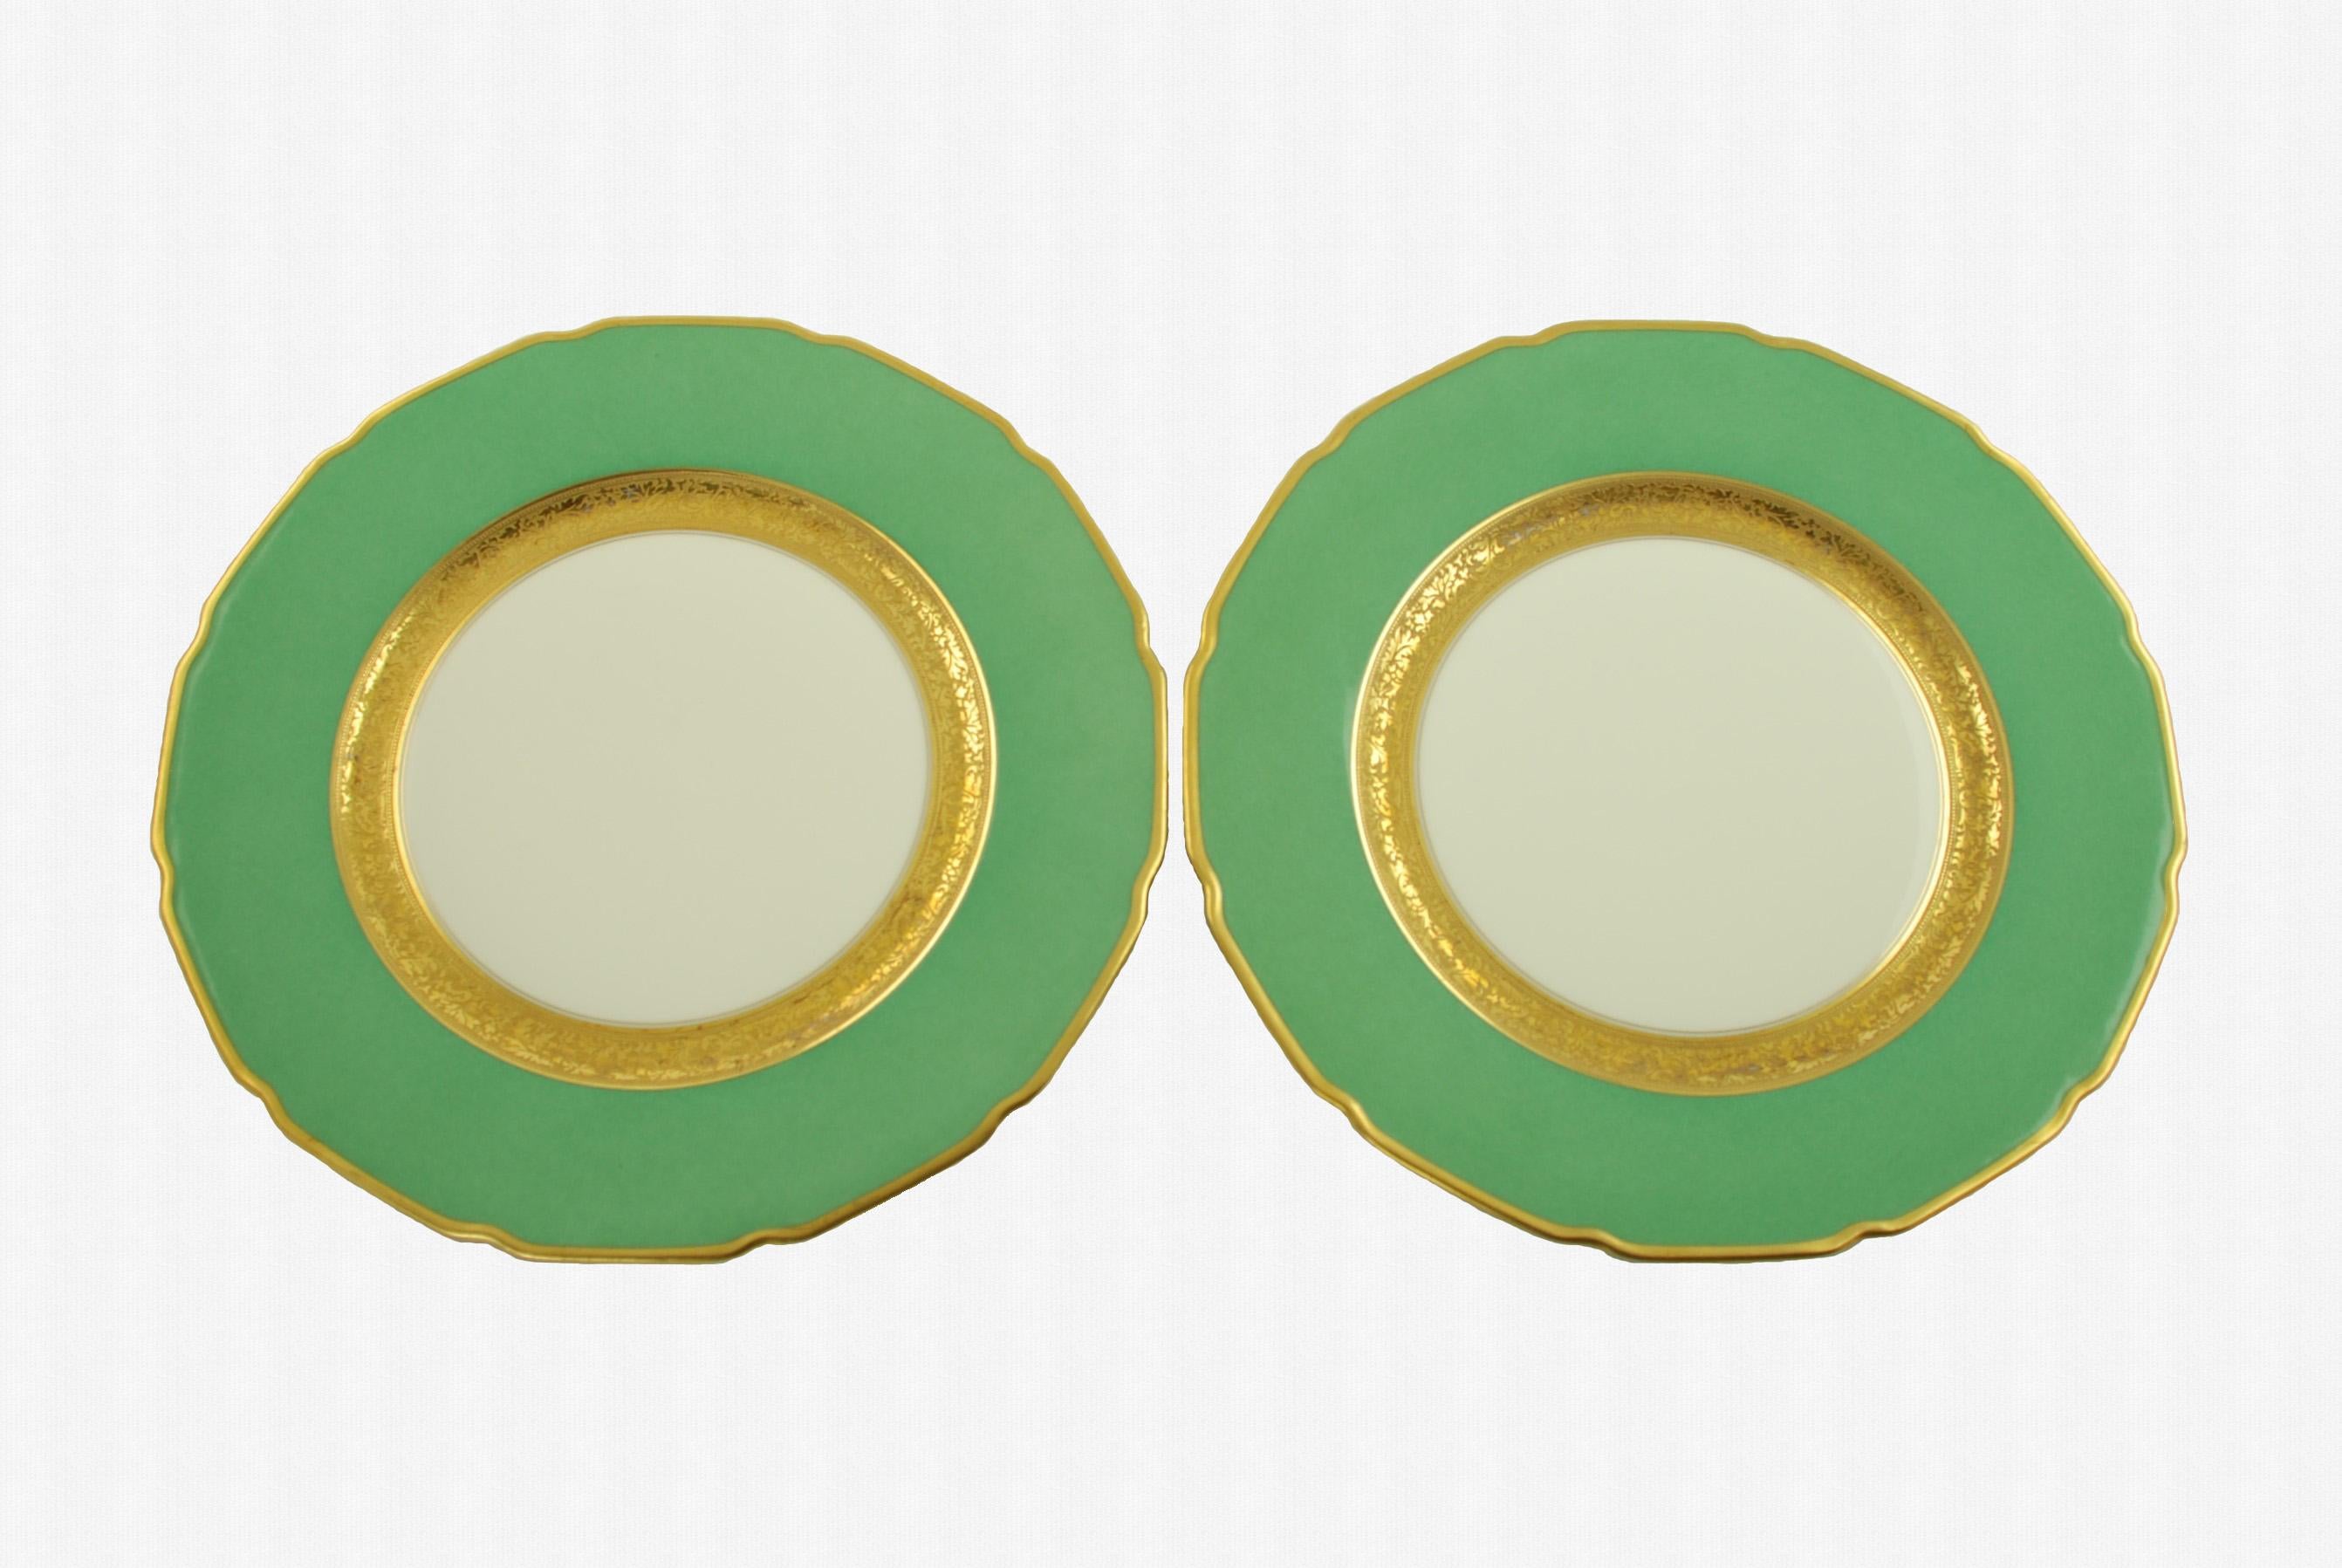 Antique Tressemanes & Vogt Porcelain Dinner Plates with Green Band and Gilt Trim 1